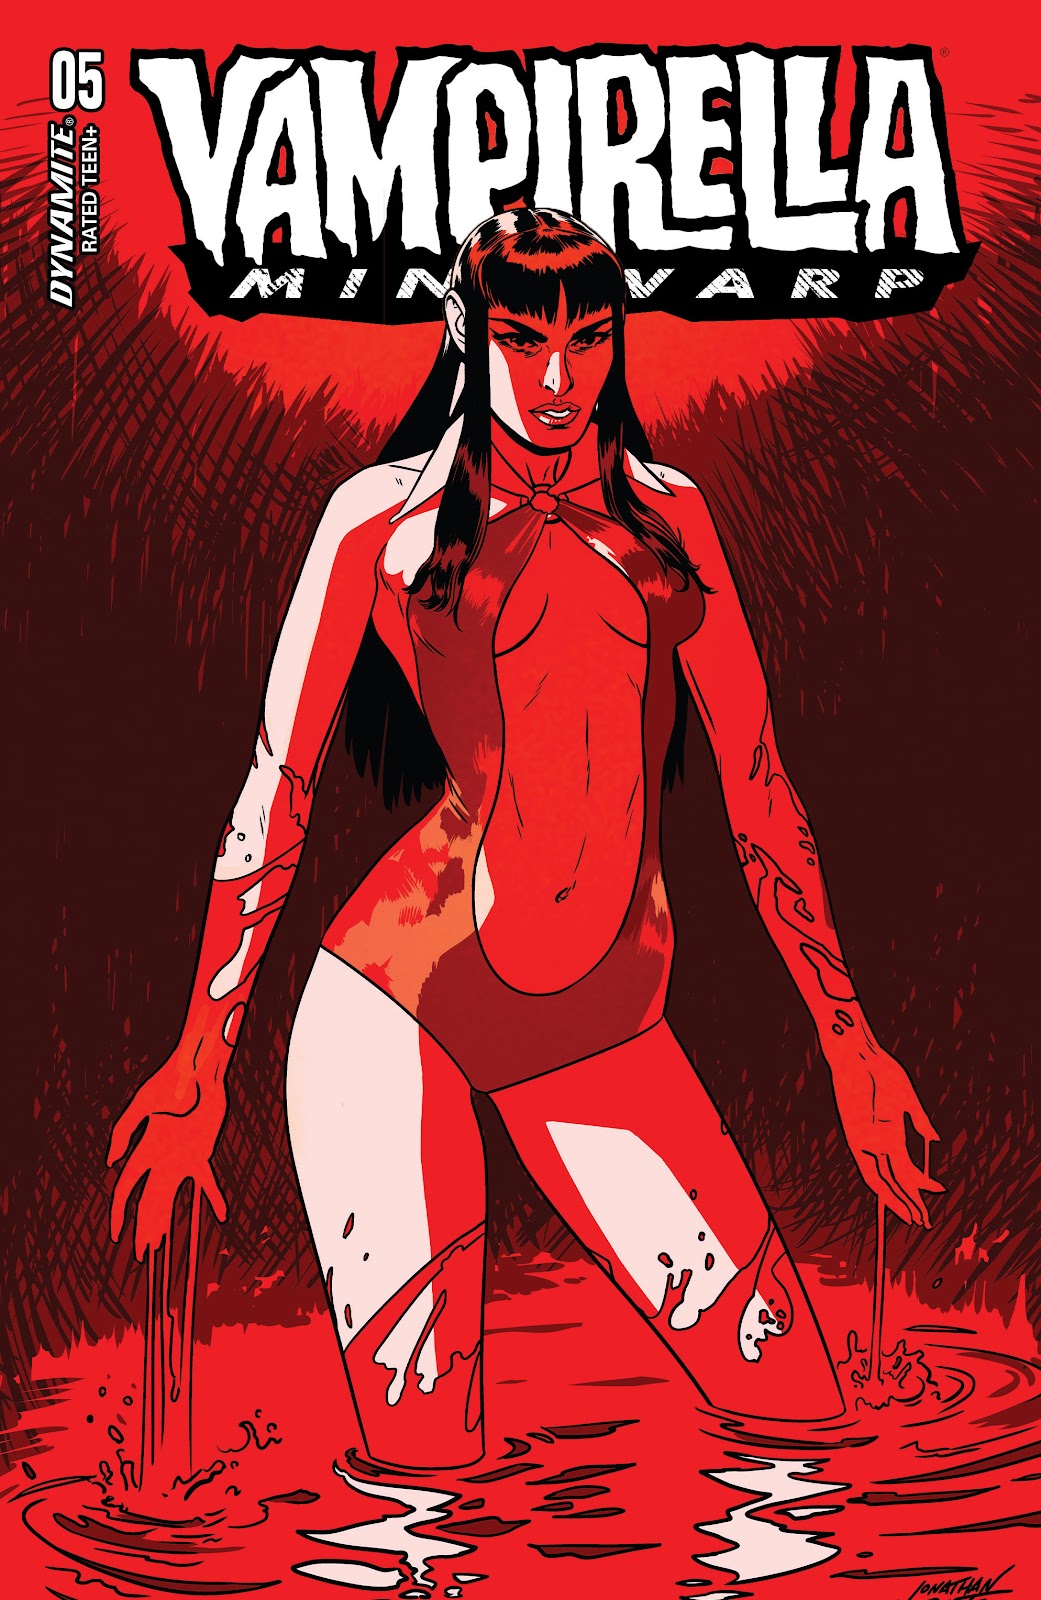 Vampirella: Mindwarp issue 5 - Page 4